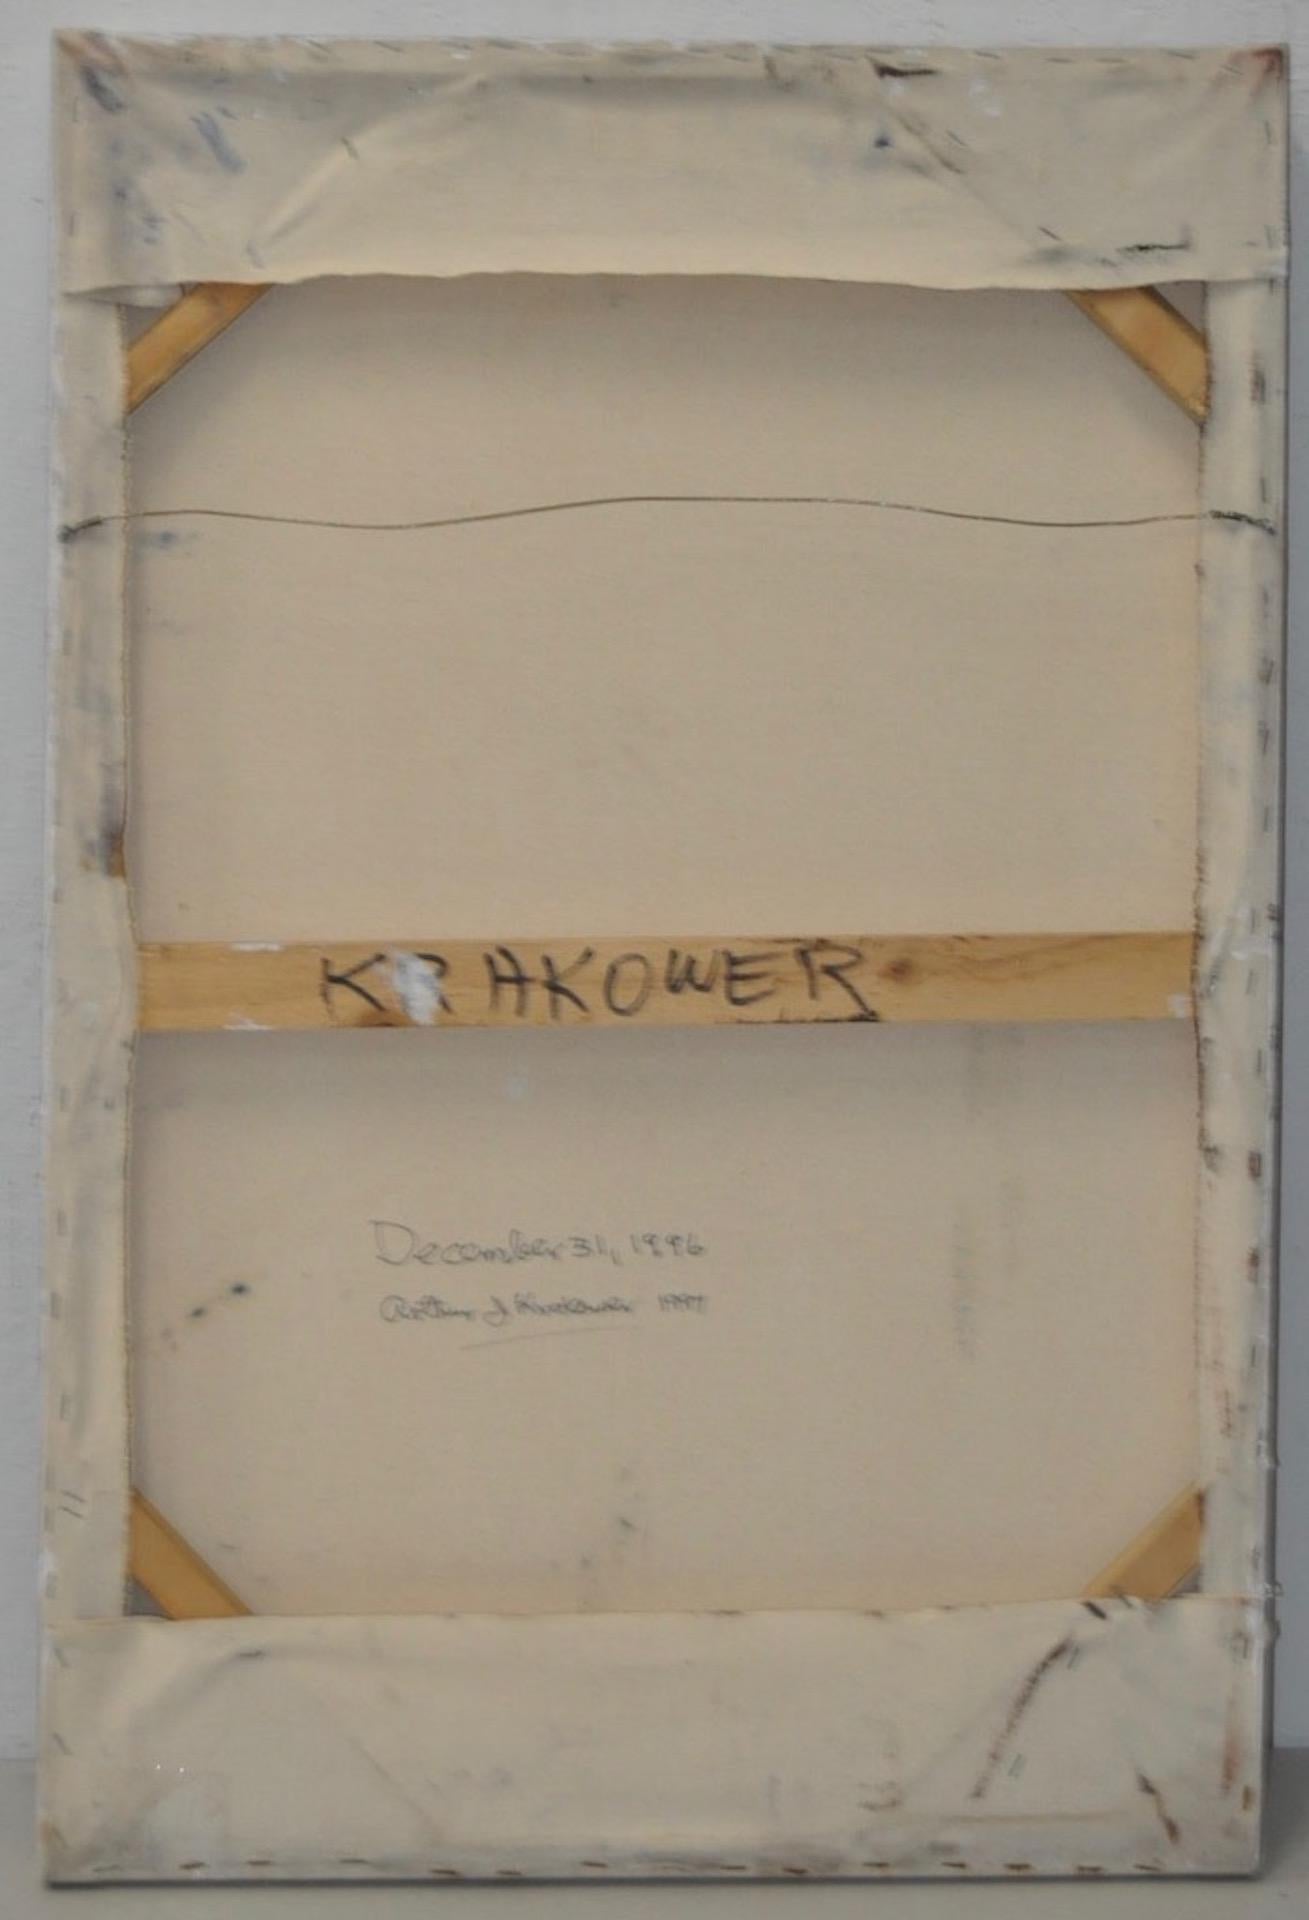 Arthur J. Krakower Ölgemälde ca. 1996

Original-Ölgemälde des unter Denkmalschutz stehenden oktogenarischen Künstlers Arthur J. Krakower.

Krakower begann erst später mit der Malerei. Die meisten seiner Werke entstanden, als er bereits 80 Jahre alt